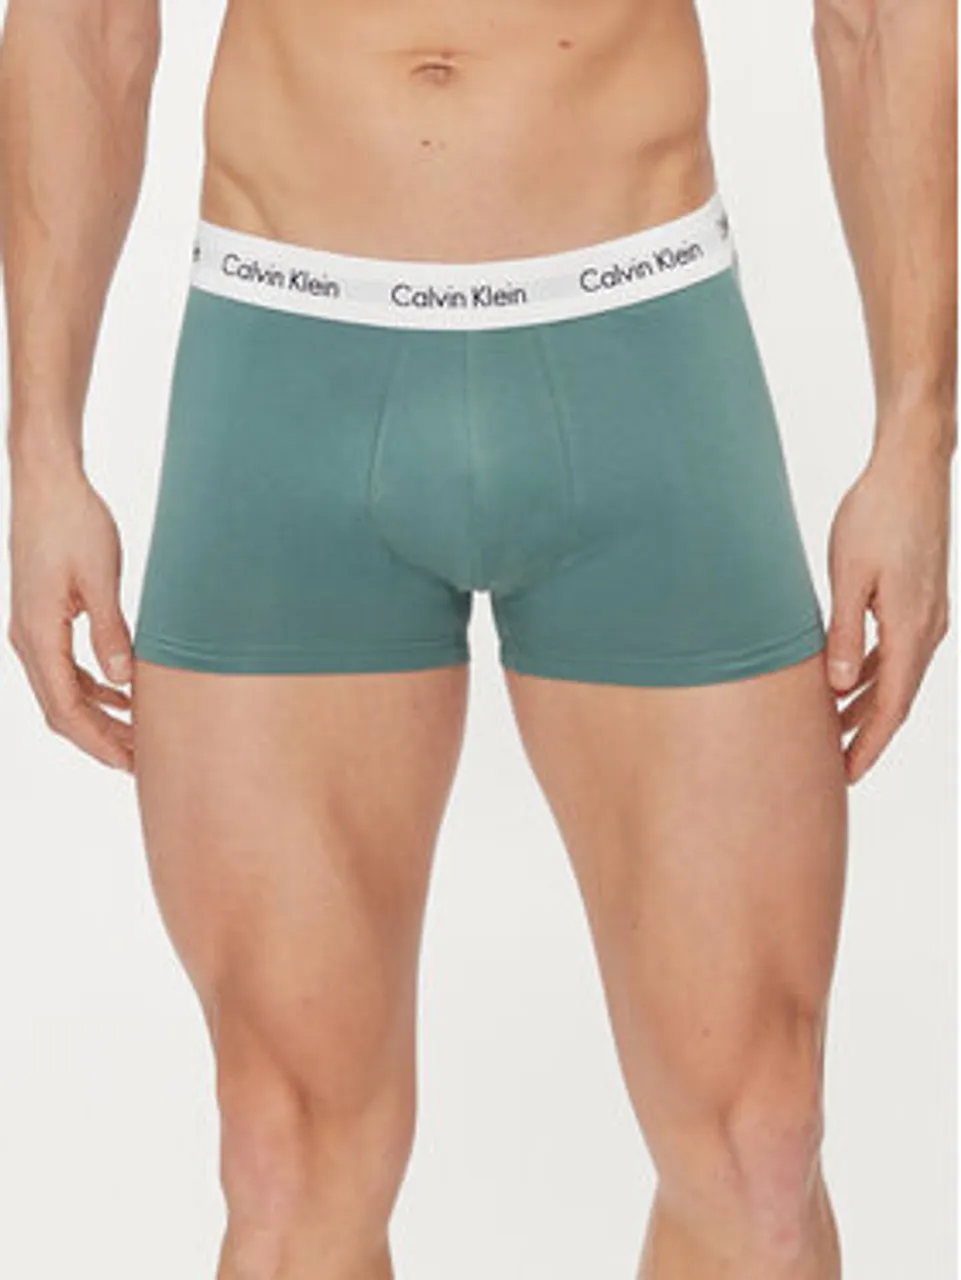 Calvin Klein Underwear 3er-Set Boxershorts 0000U2664G Bunt